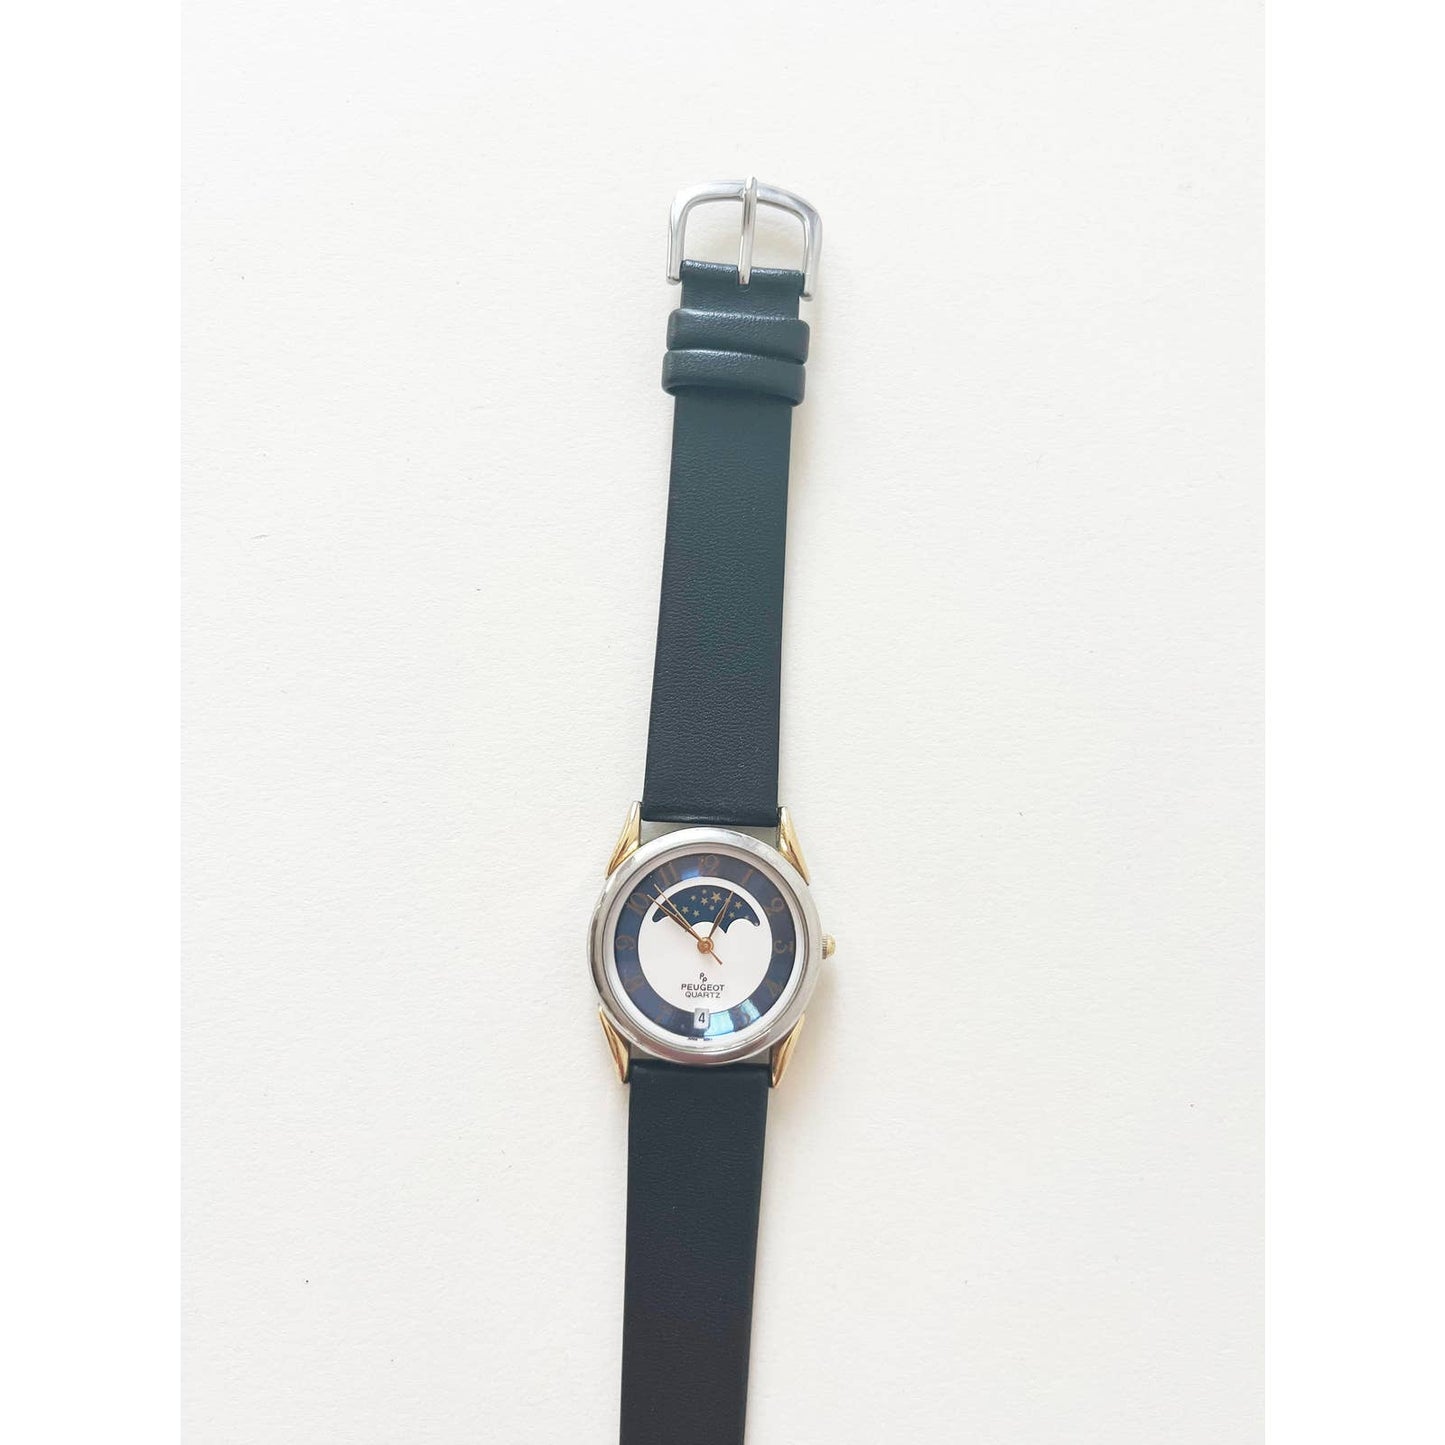 Vintage Leather Strap Peugeot Quartz Watch Moon